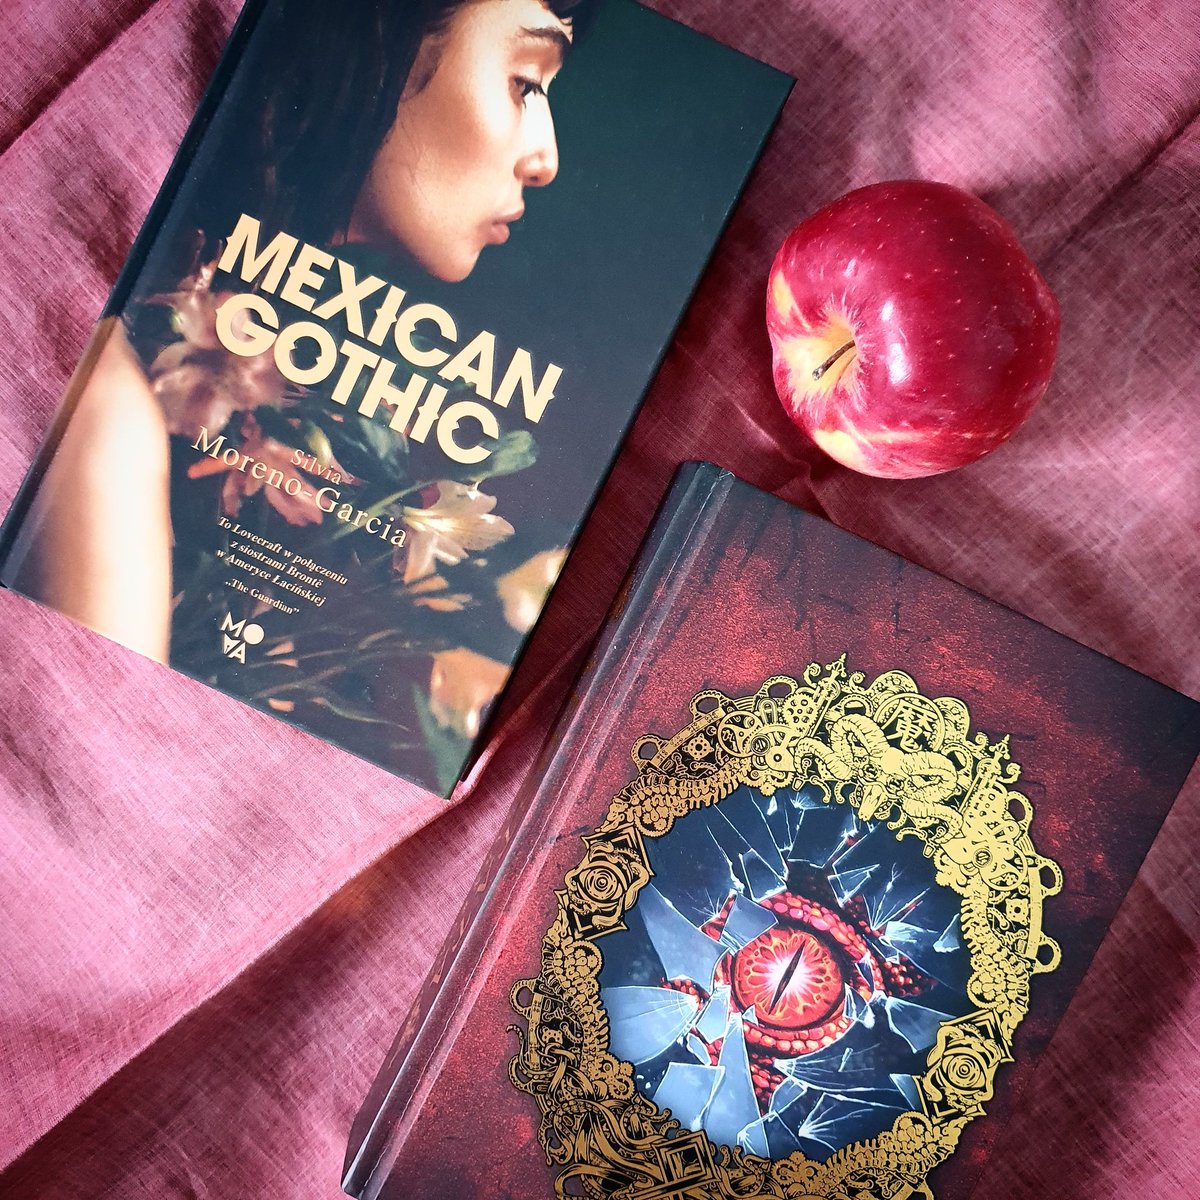 Jak wasze fantastyczne plany na święta?

Uniwersum i pomysły #HPLovecraft to wciąż żywotny materiał. Można pożyczać dosłownie jak w #Apostata #ŁukaszCzarnecki, albo sugerować specyficzny nastrój - co daje nam #SilviaMorenoGarcia w #MexicanGothic.

#ksiazki #horror #weirdfiction